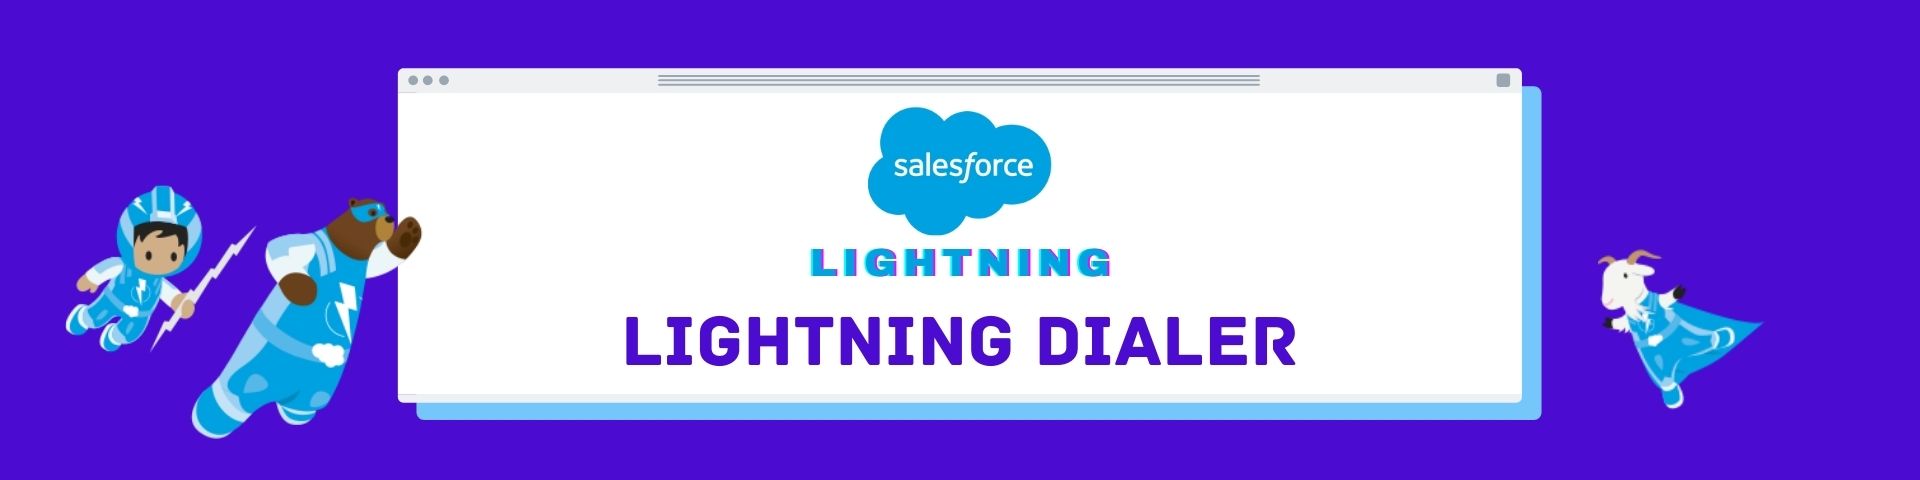 Salesforce Lightning dialer